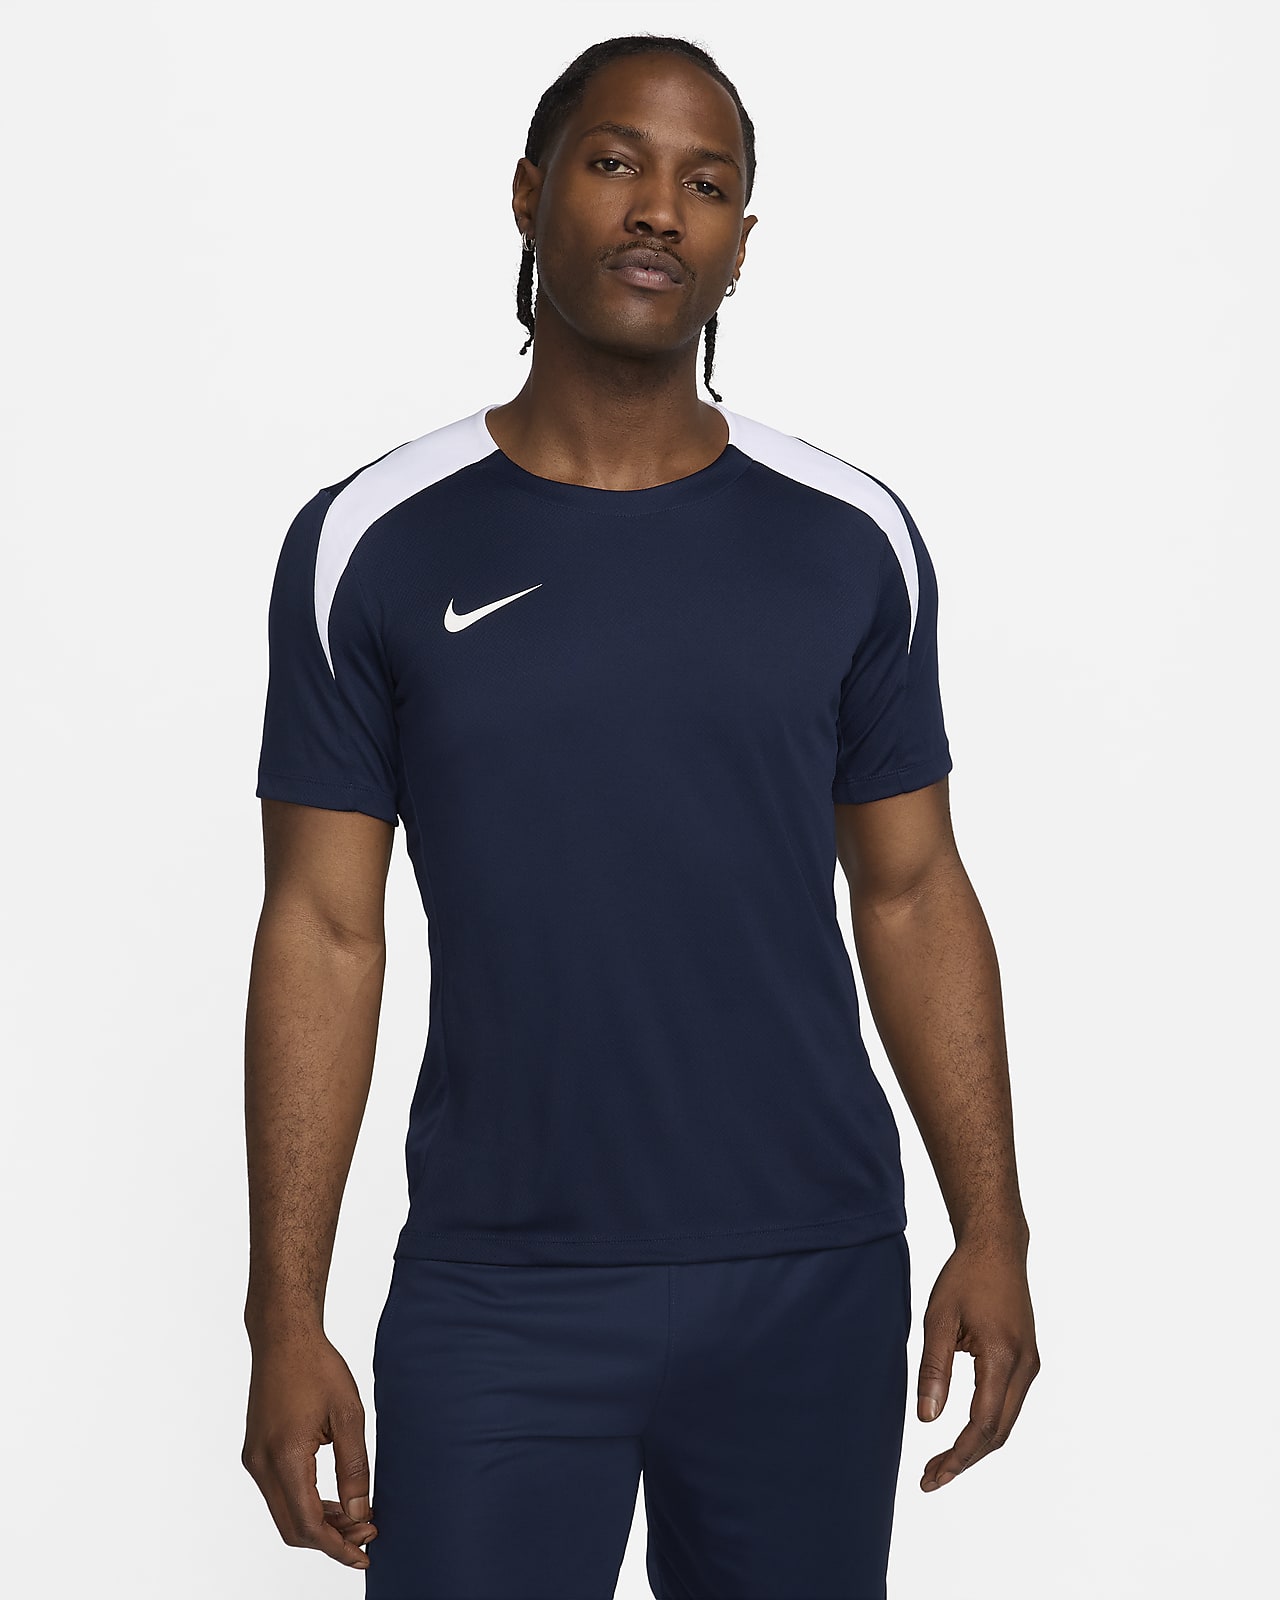 Ανδρική κοντομάνικη ποδοσφαιρική μπλούζα Dri-FIT Nike Strike